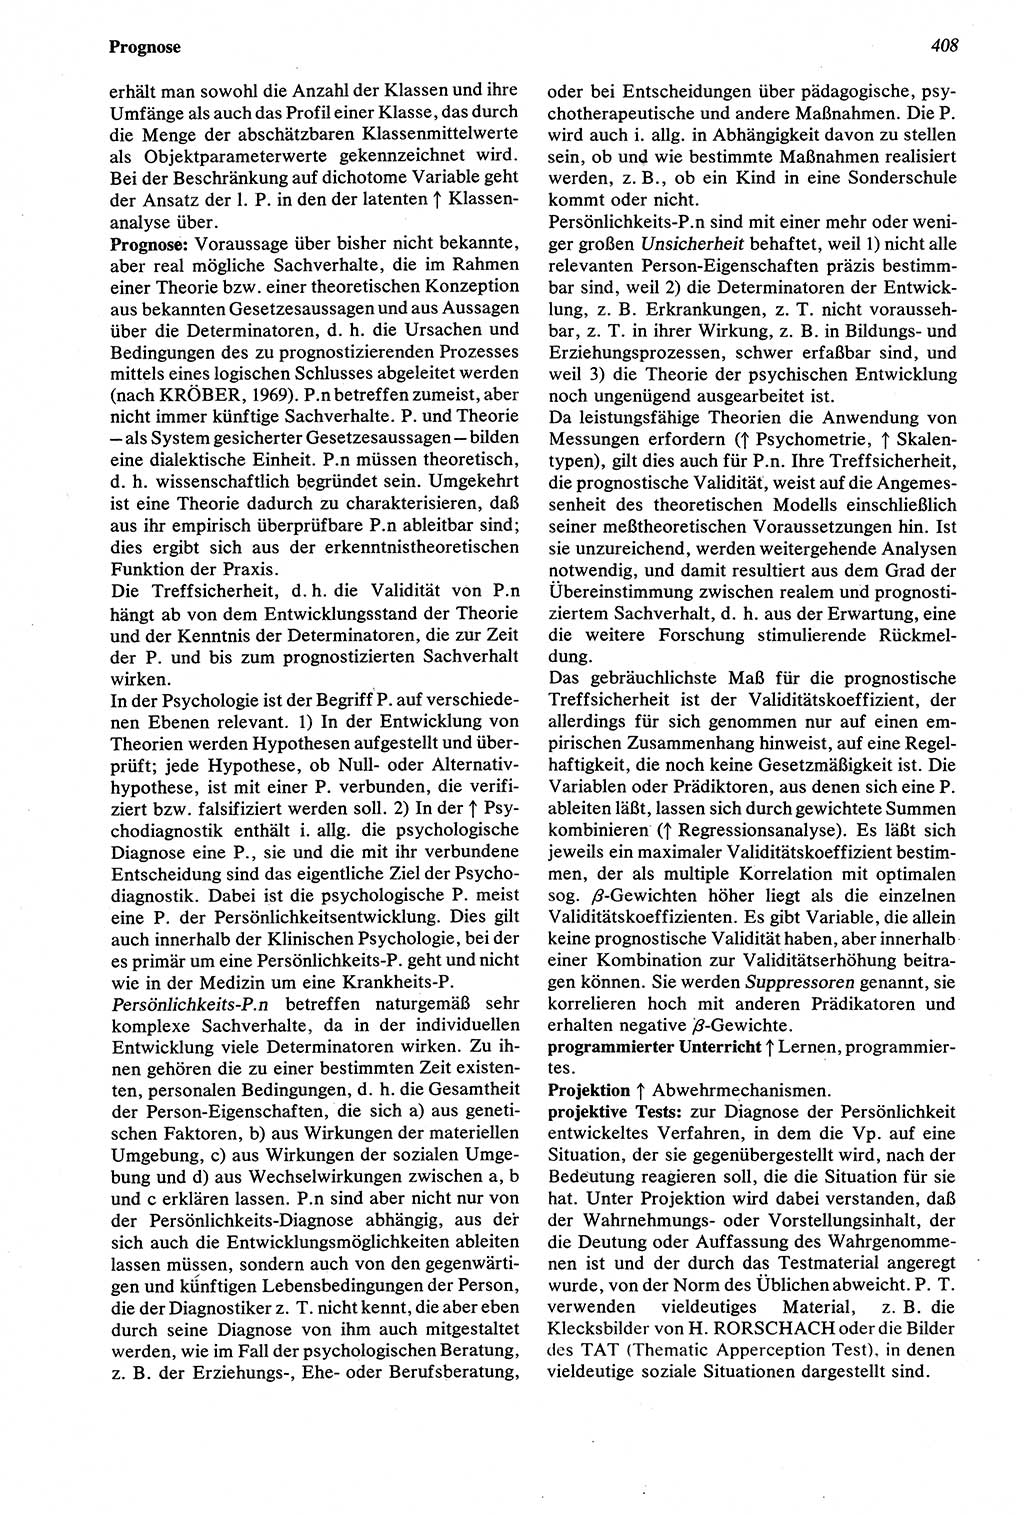 Wörterbuch der Psychologie [Deutsche Demokratische Republik (DDR)] 1976, Seite 408 (Wb. Psych. DDR 1976, S. 408)